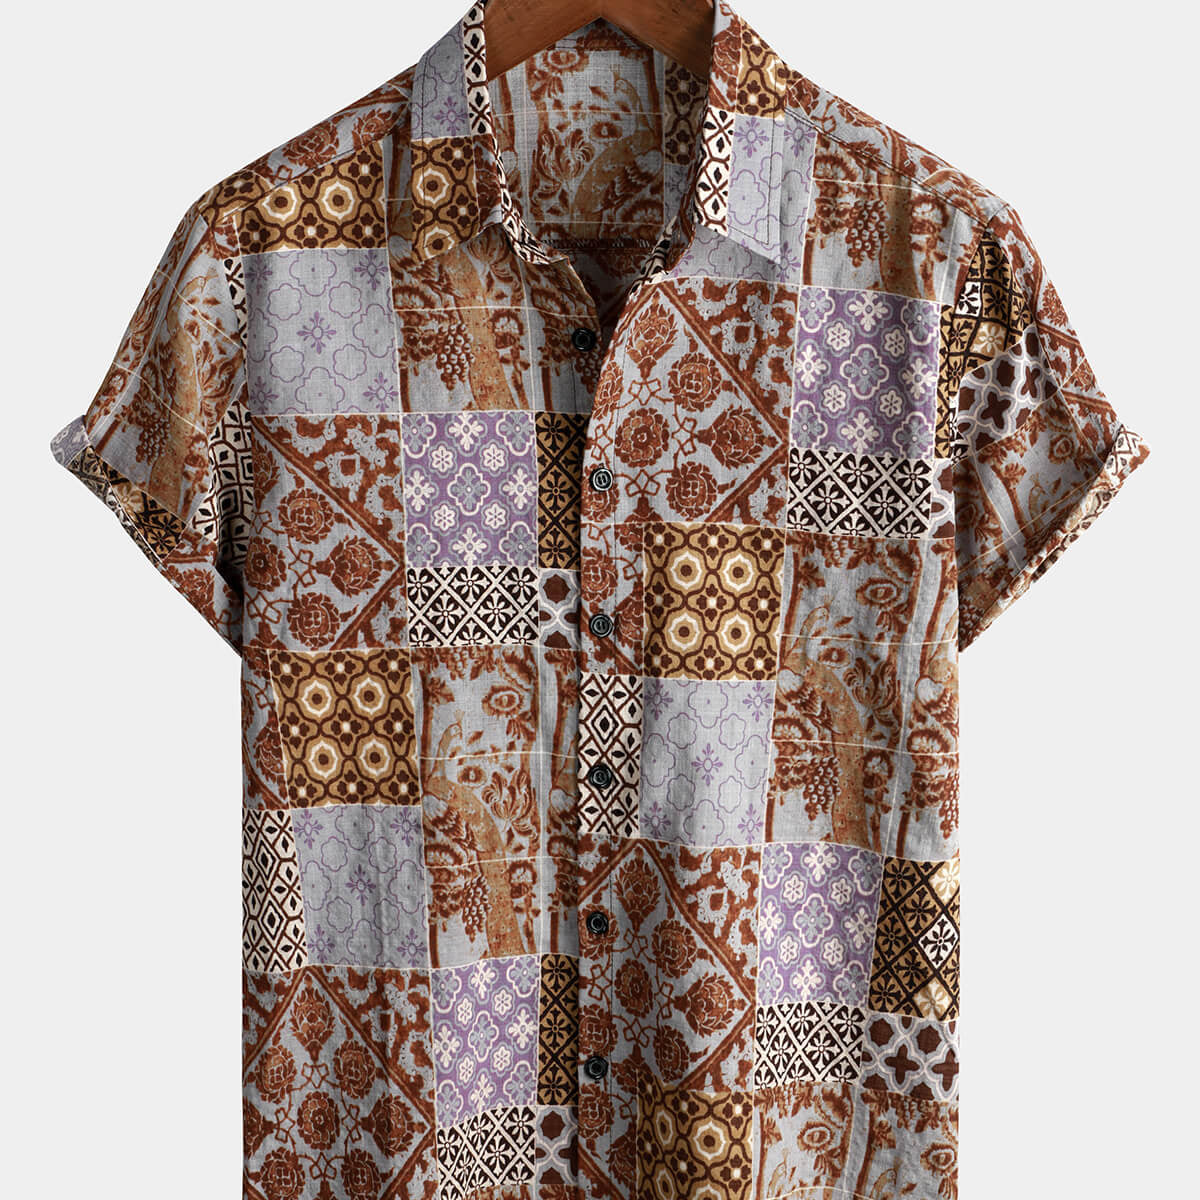 Camisa con botones de verano de los años 70, color marrón, retro, de manga corta, con retazos florales vintage para hombre